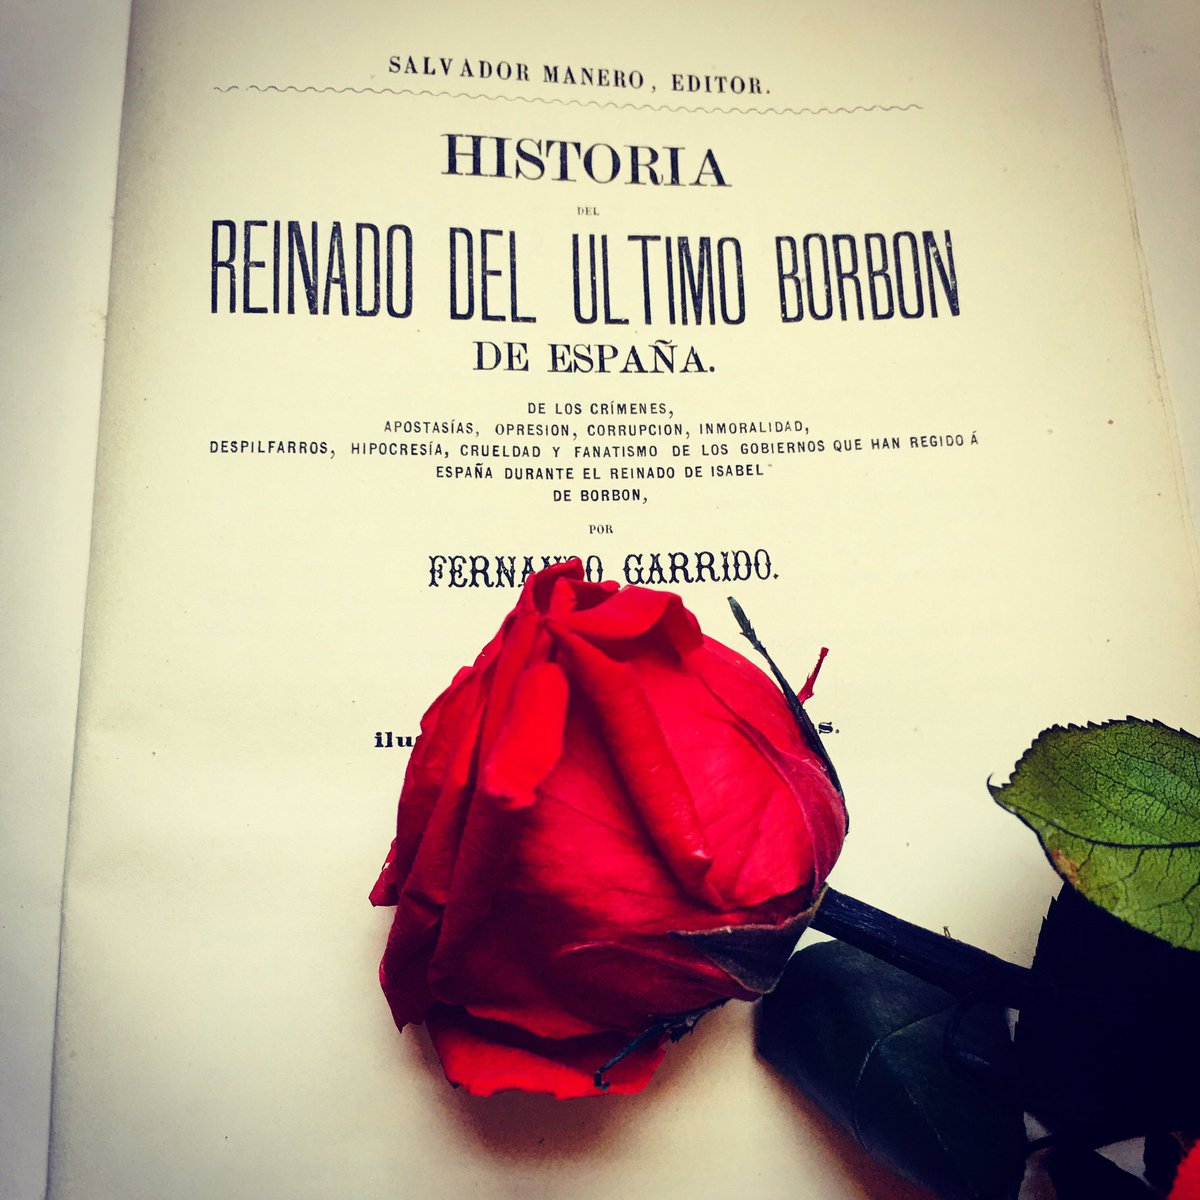 Feliz Día Internacional del Libro. #KeepReadingEnCasa
#DíaDelLibro #SantJordi